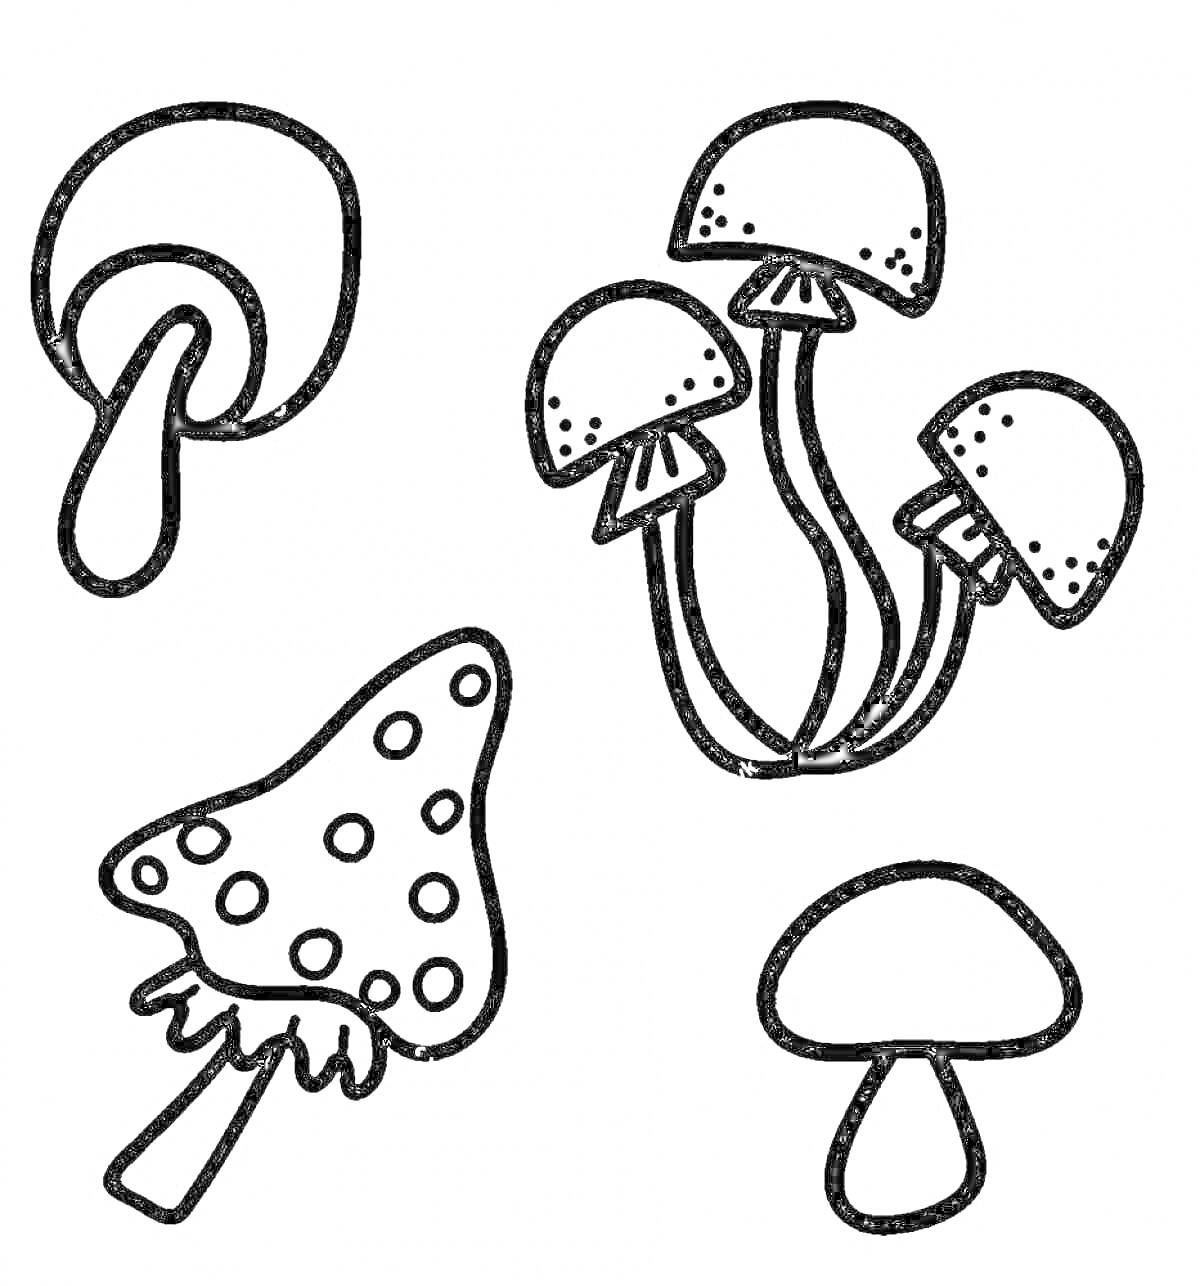 Раскраска Несъедобные грибы: один с каплей, три гриба на одной ножке, гриб с пятнами, простой гриб